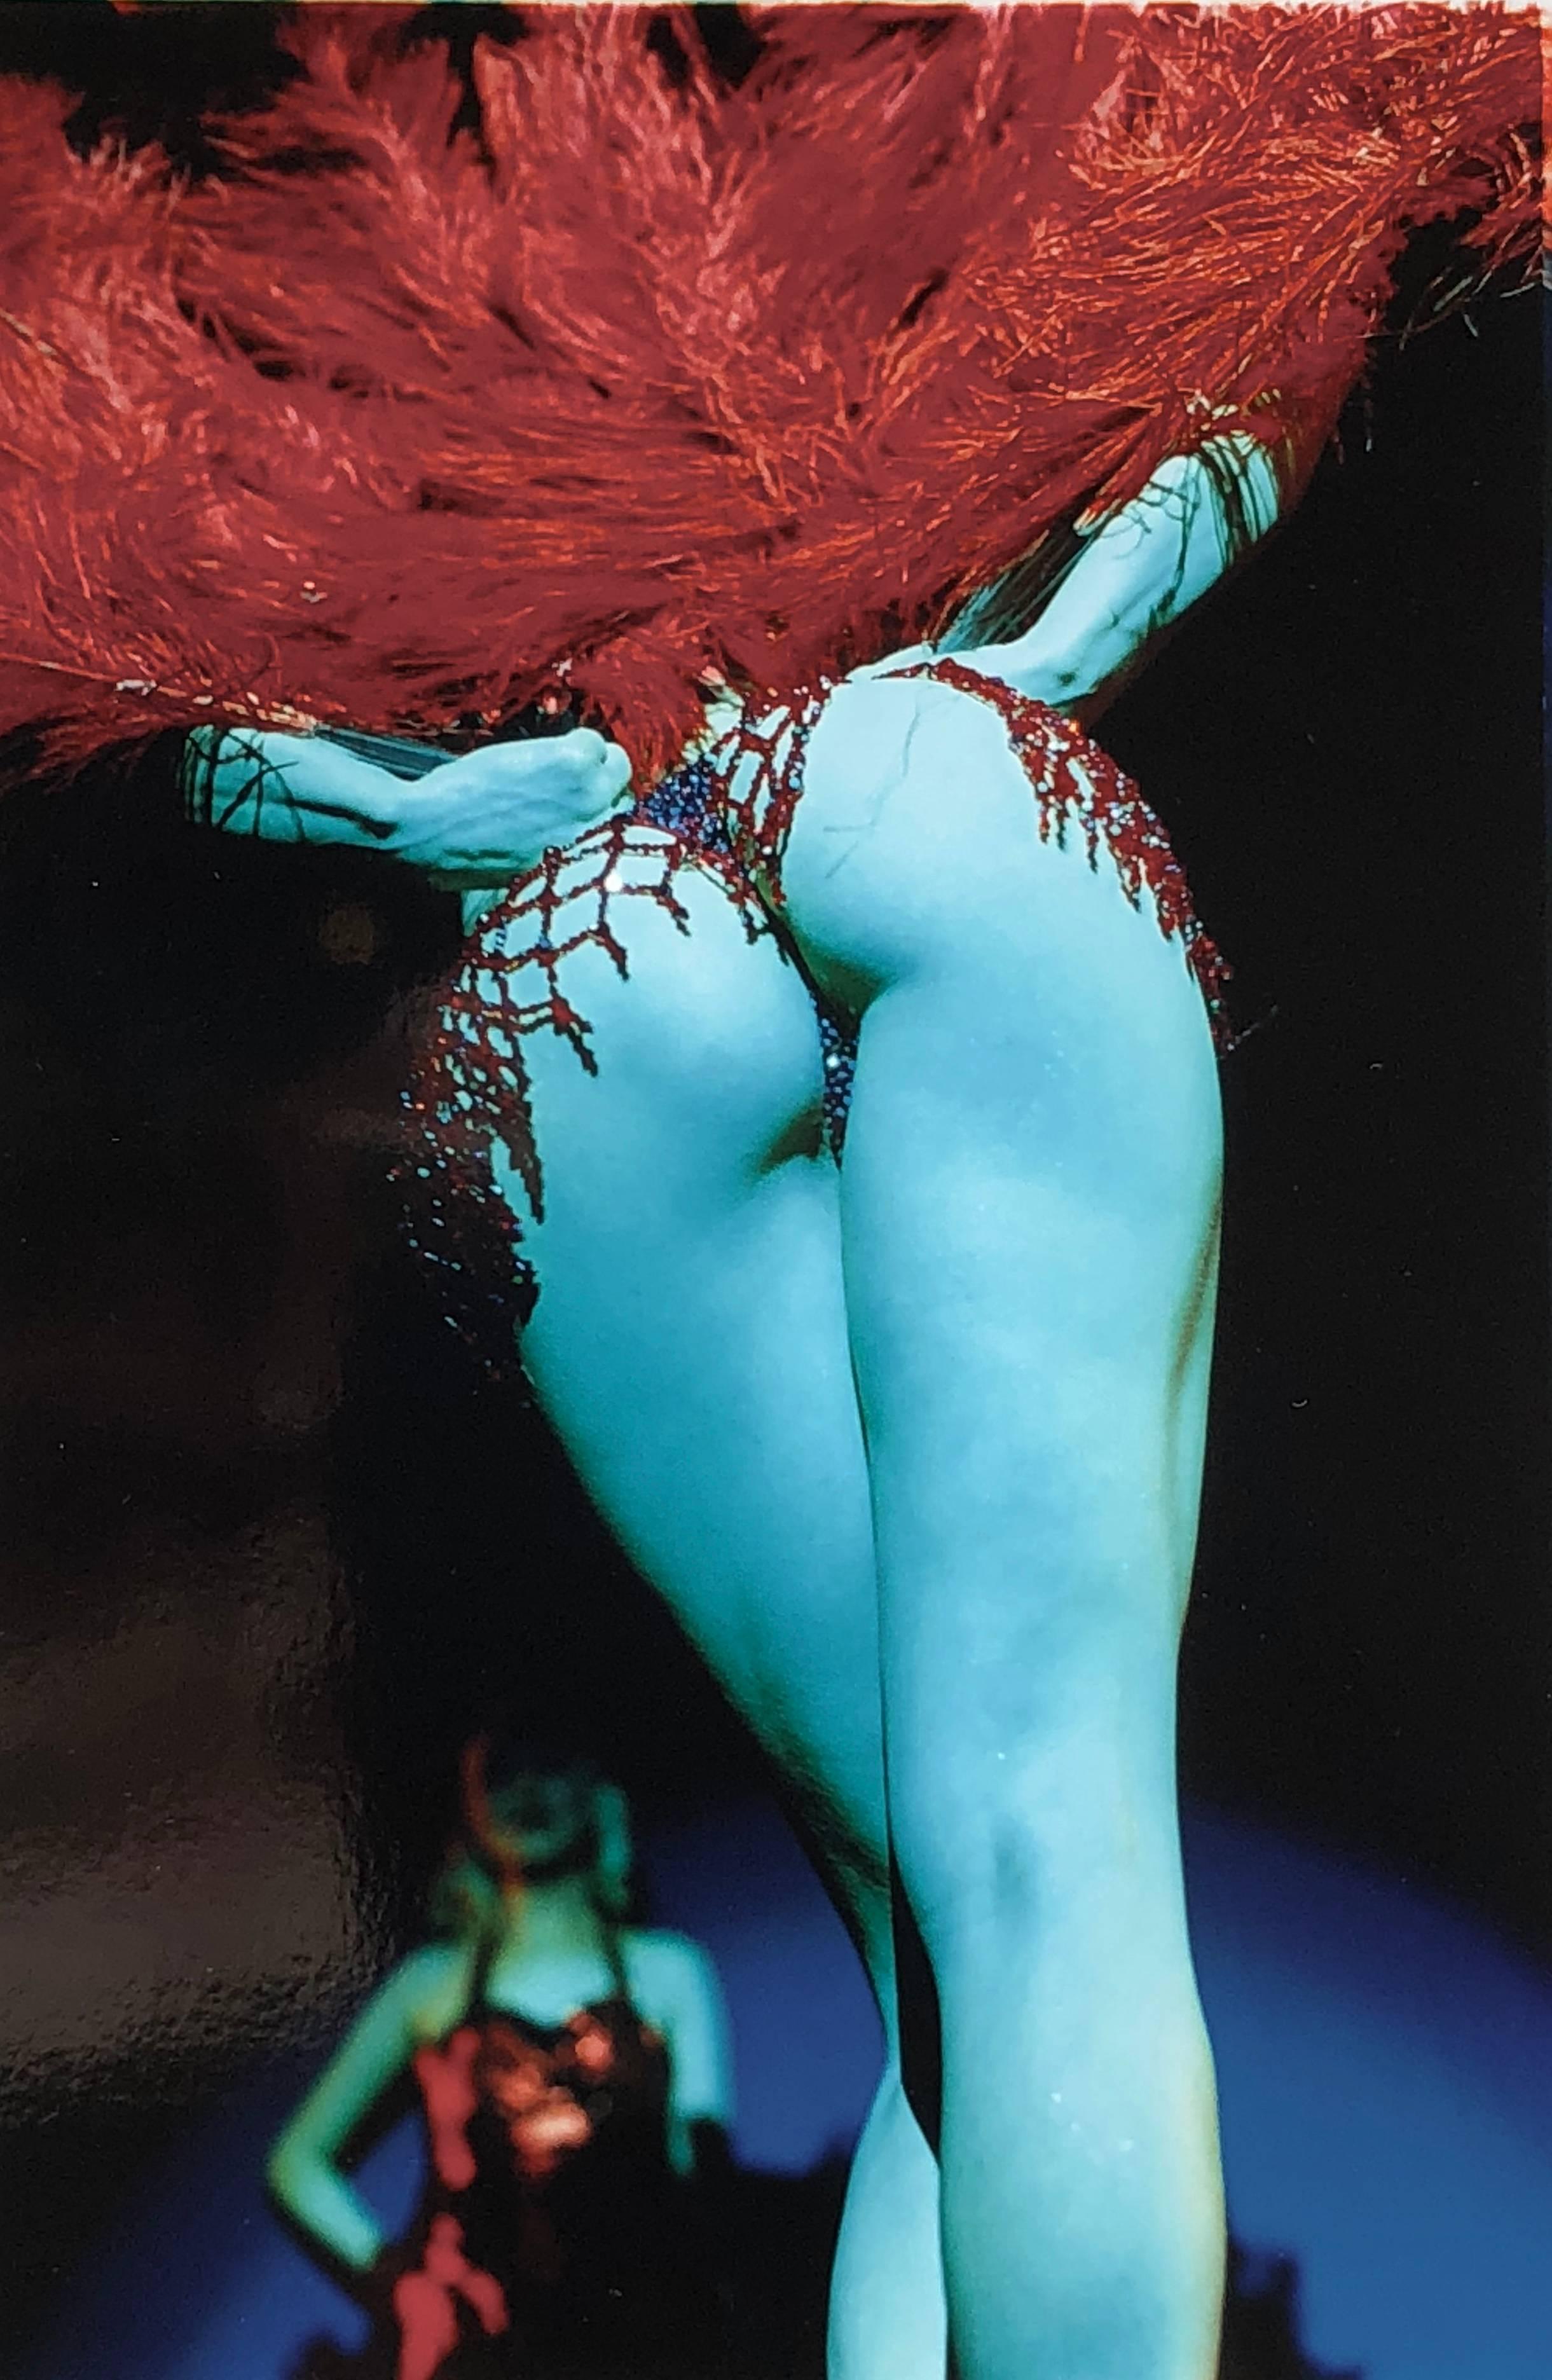 Nude Photograph Richard Heeps - Série Burlesque, Tease-O-Rama, Hollywood, Los Angeles